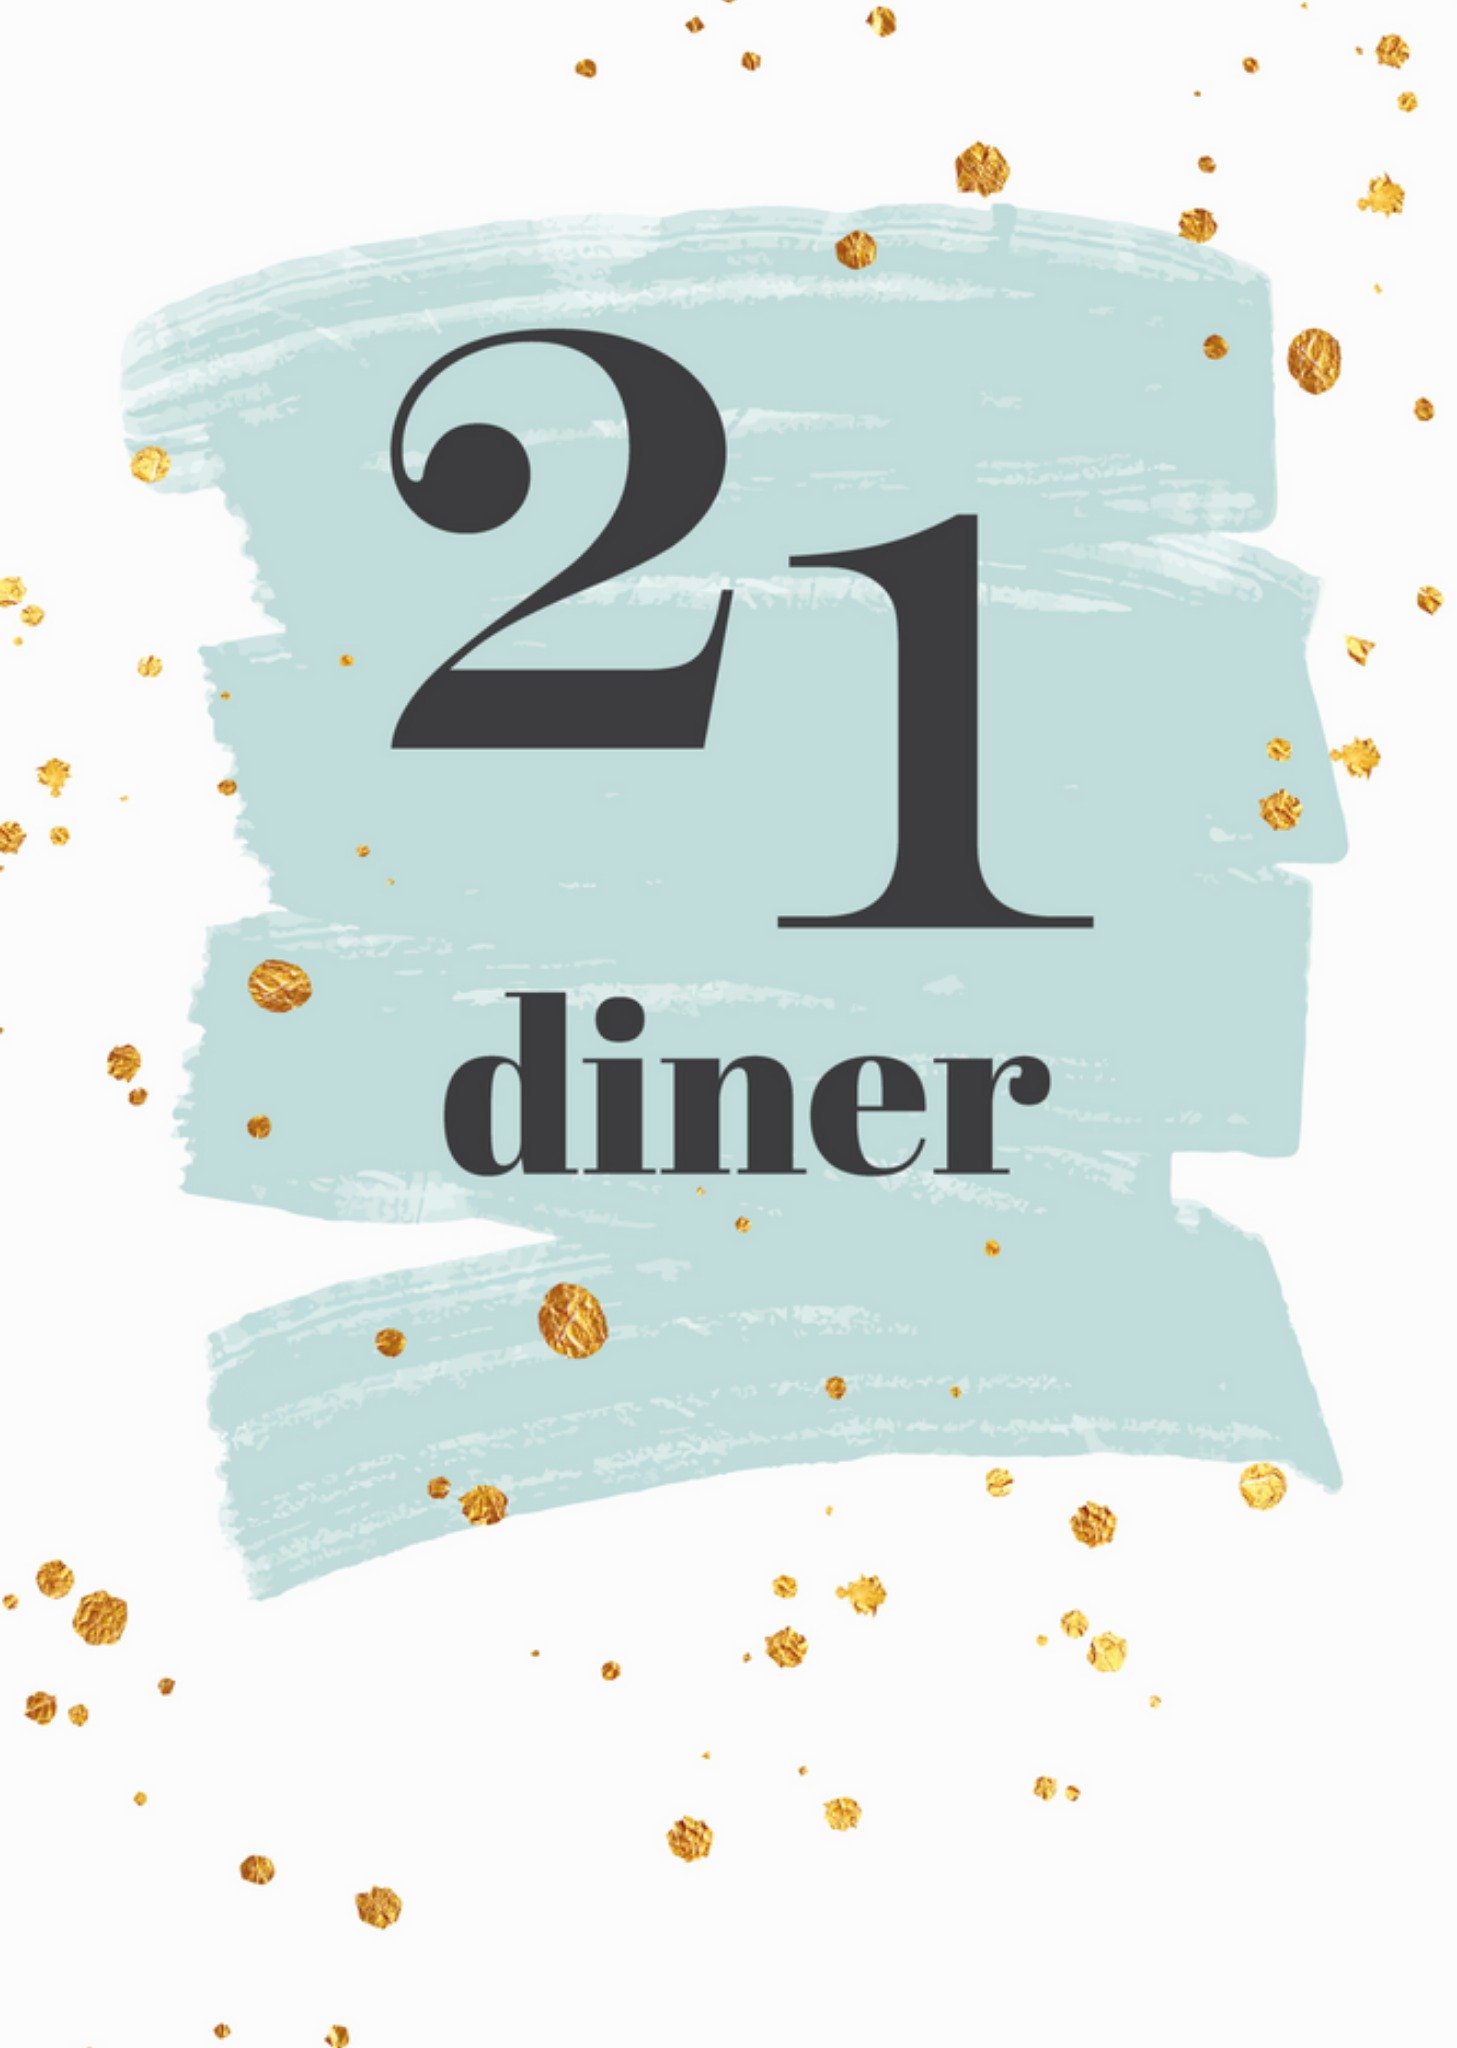 Tsjip - Uitnodiging 21 diner - Verjaardag